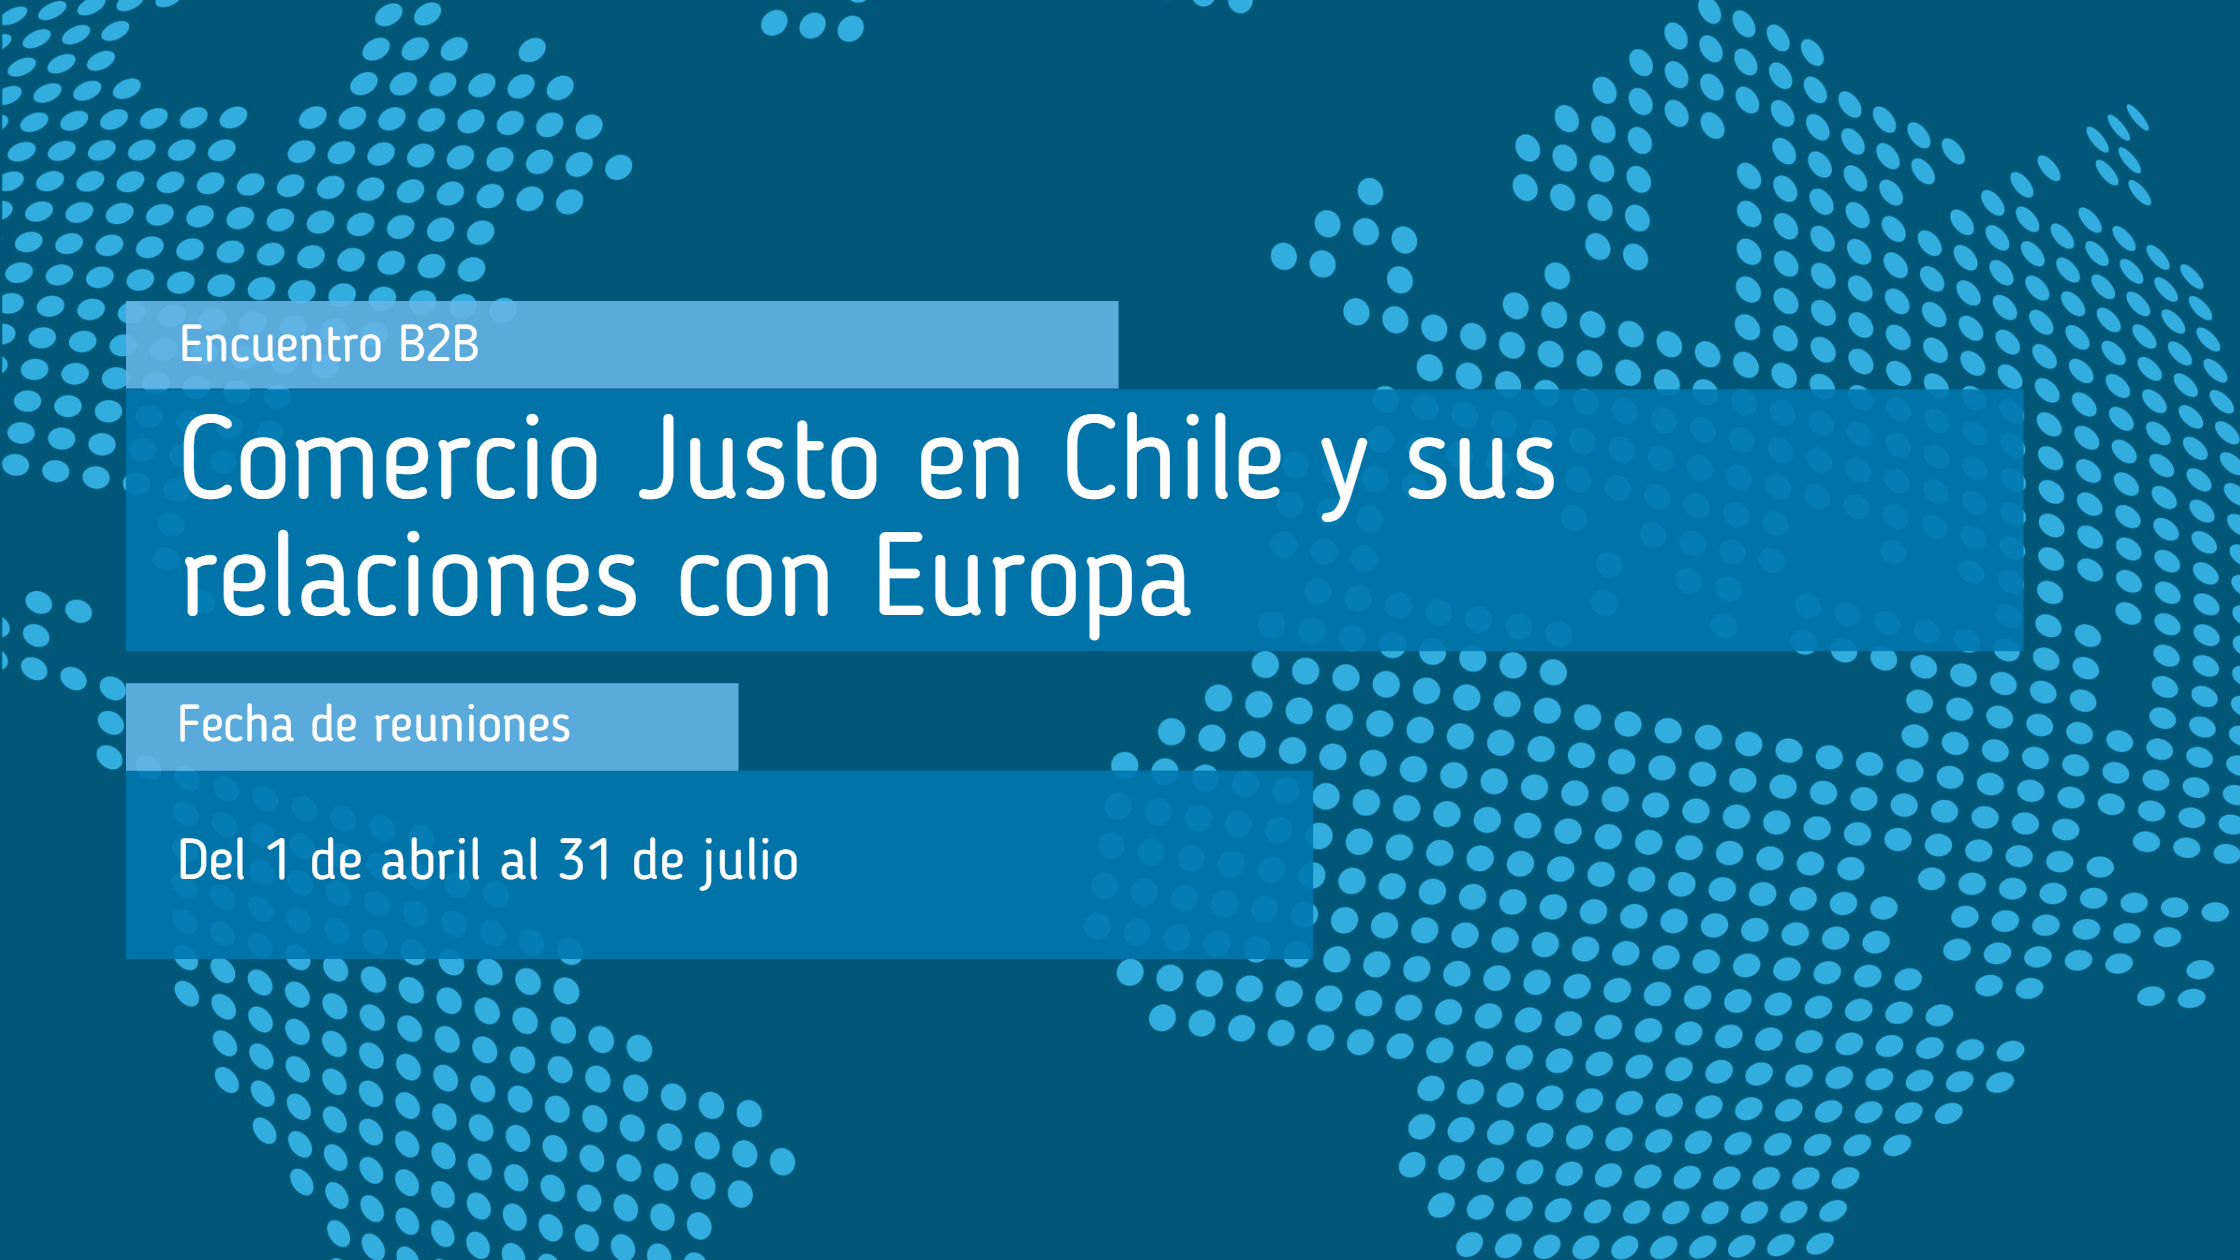 Encuentros_B2B_Comercio_Justo_en_Chile_y_sus_relaciones_con_Europa